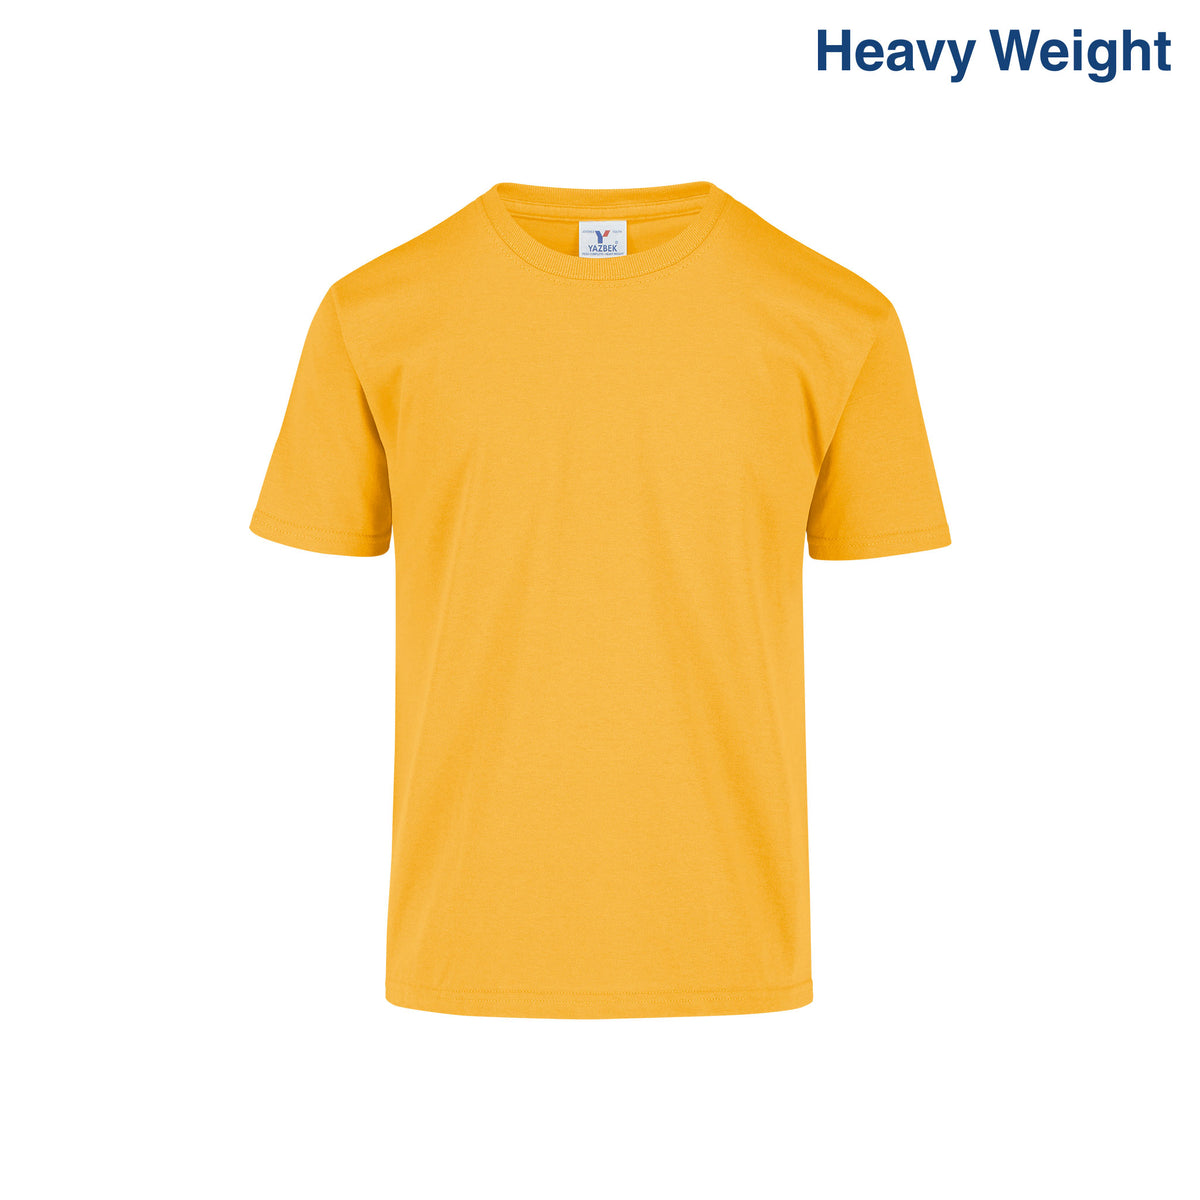 Youth’s Heavy Weight Crew Neck Short Sleeve T-Shirt (Mango) – Yazbek ...